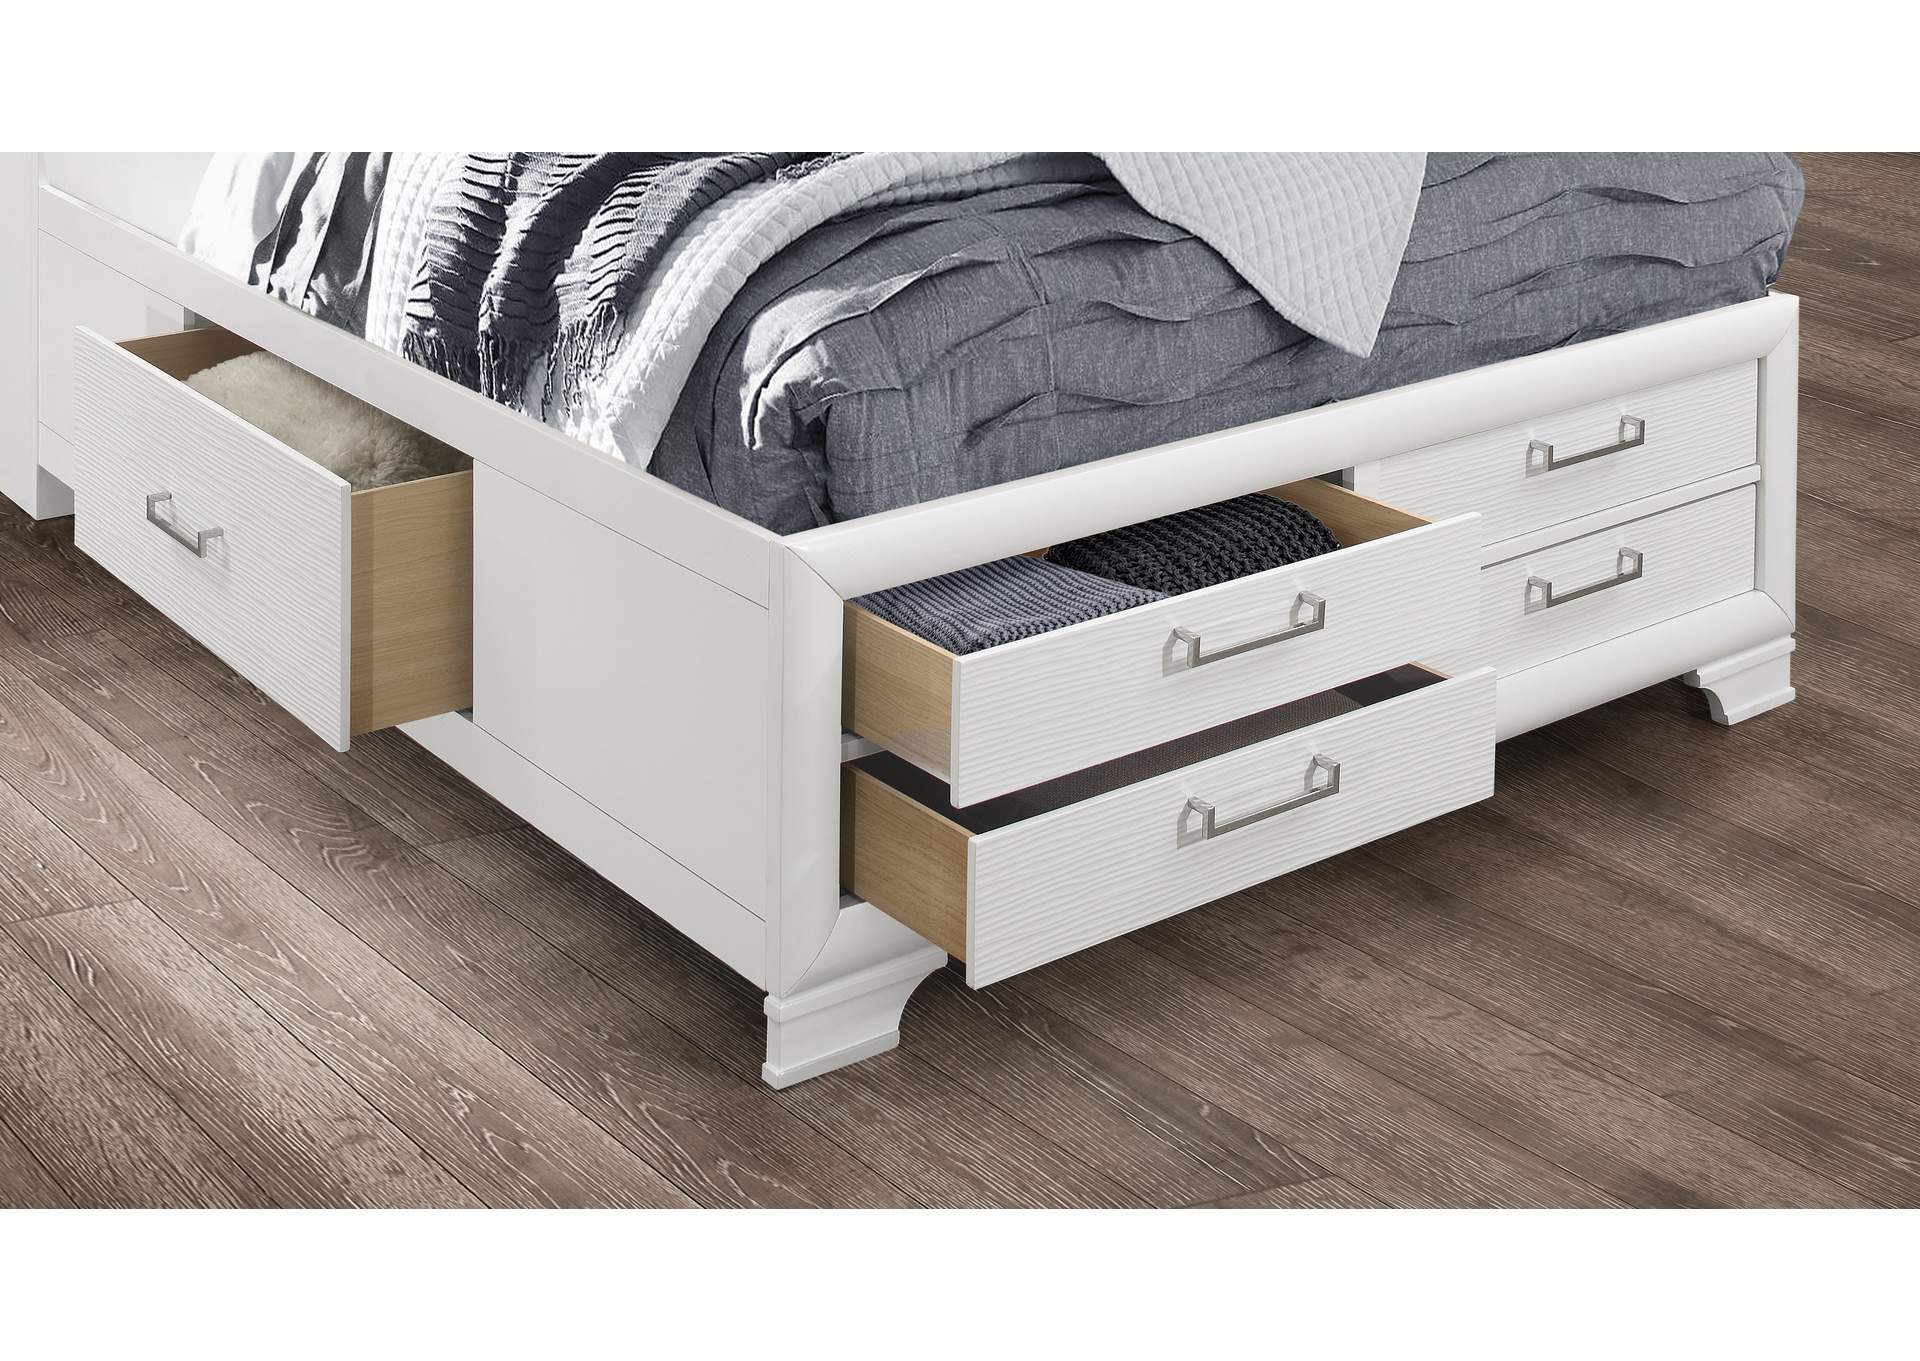 White Jordyn Full Bed,Global Furniture USA